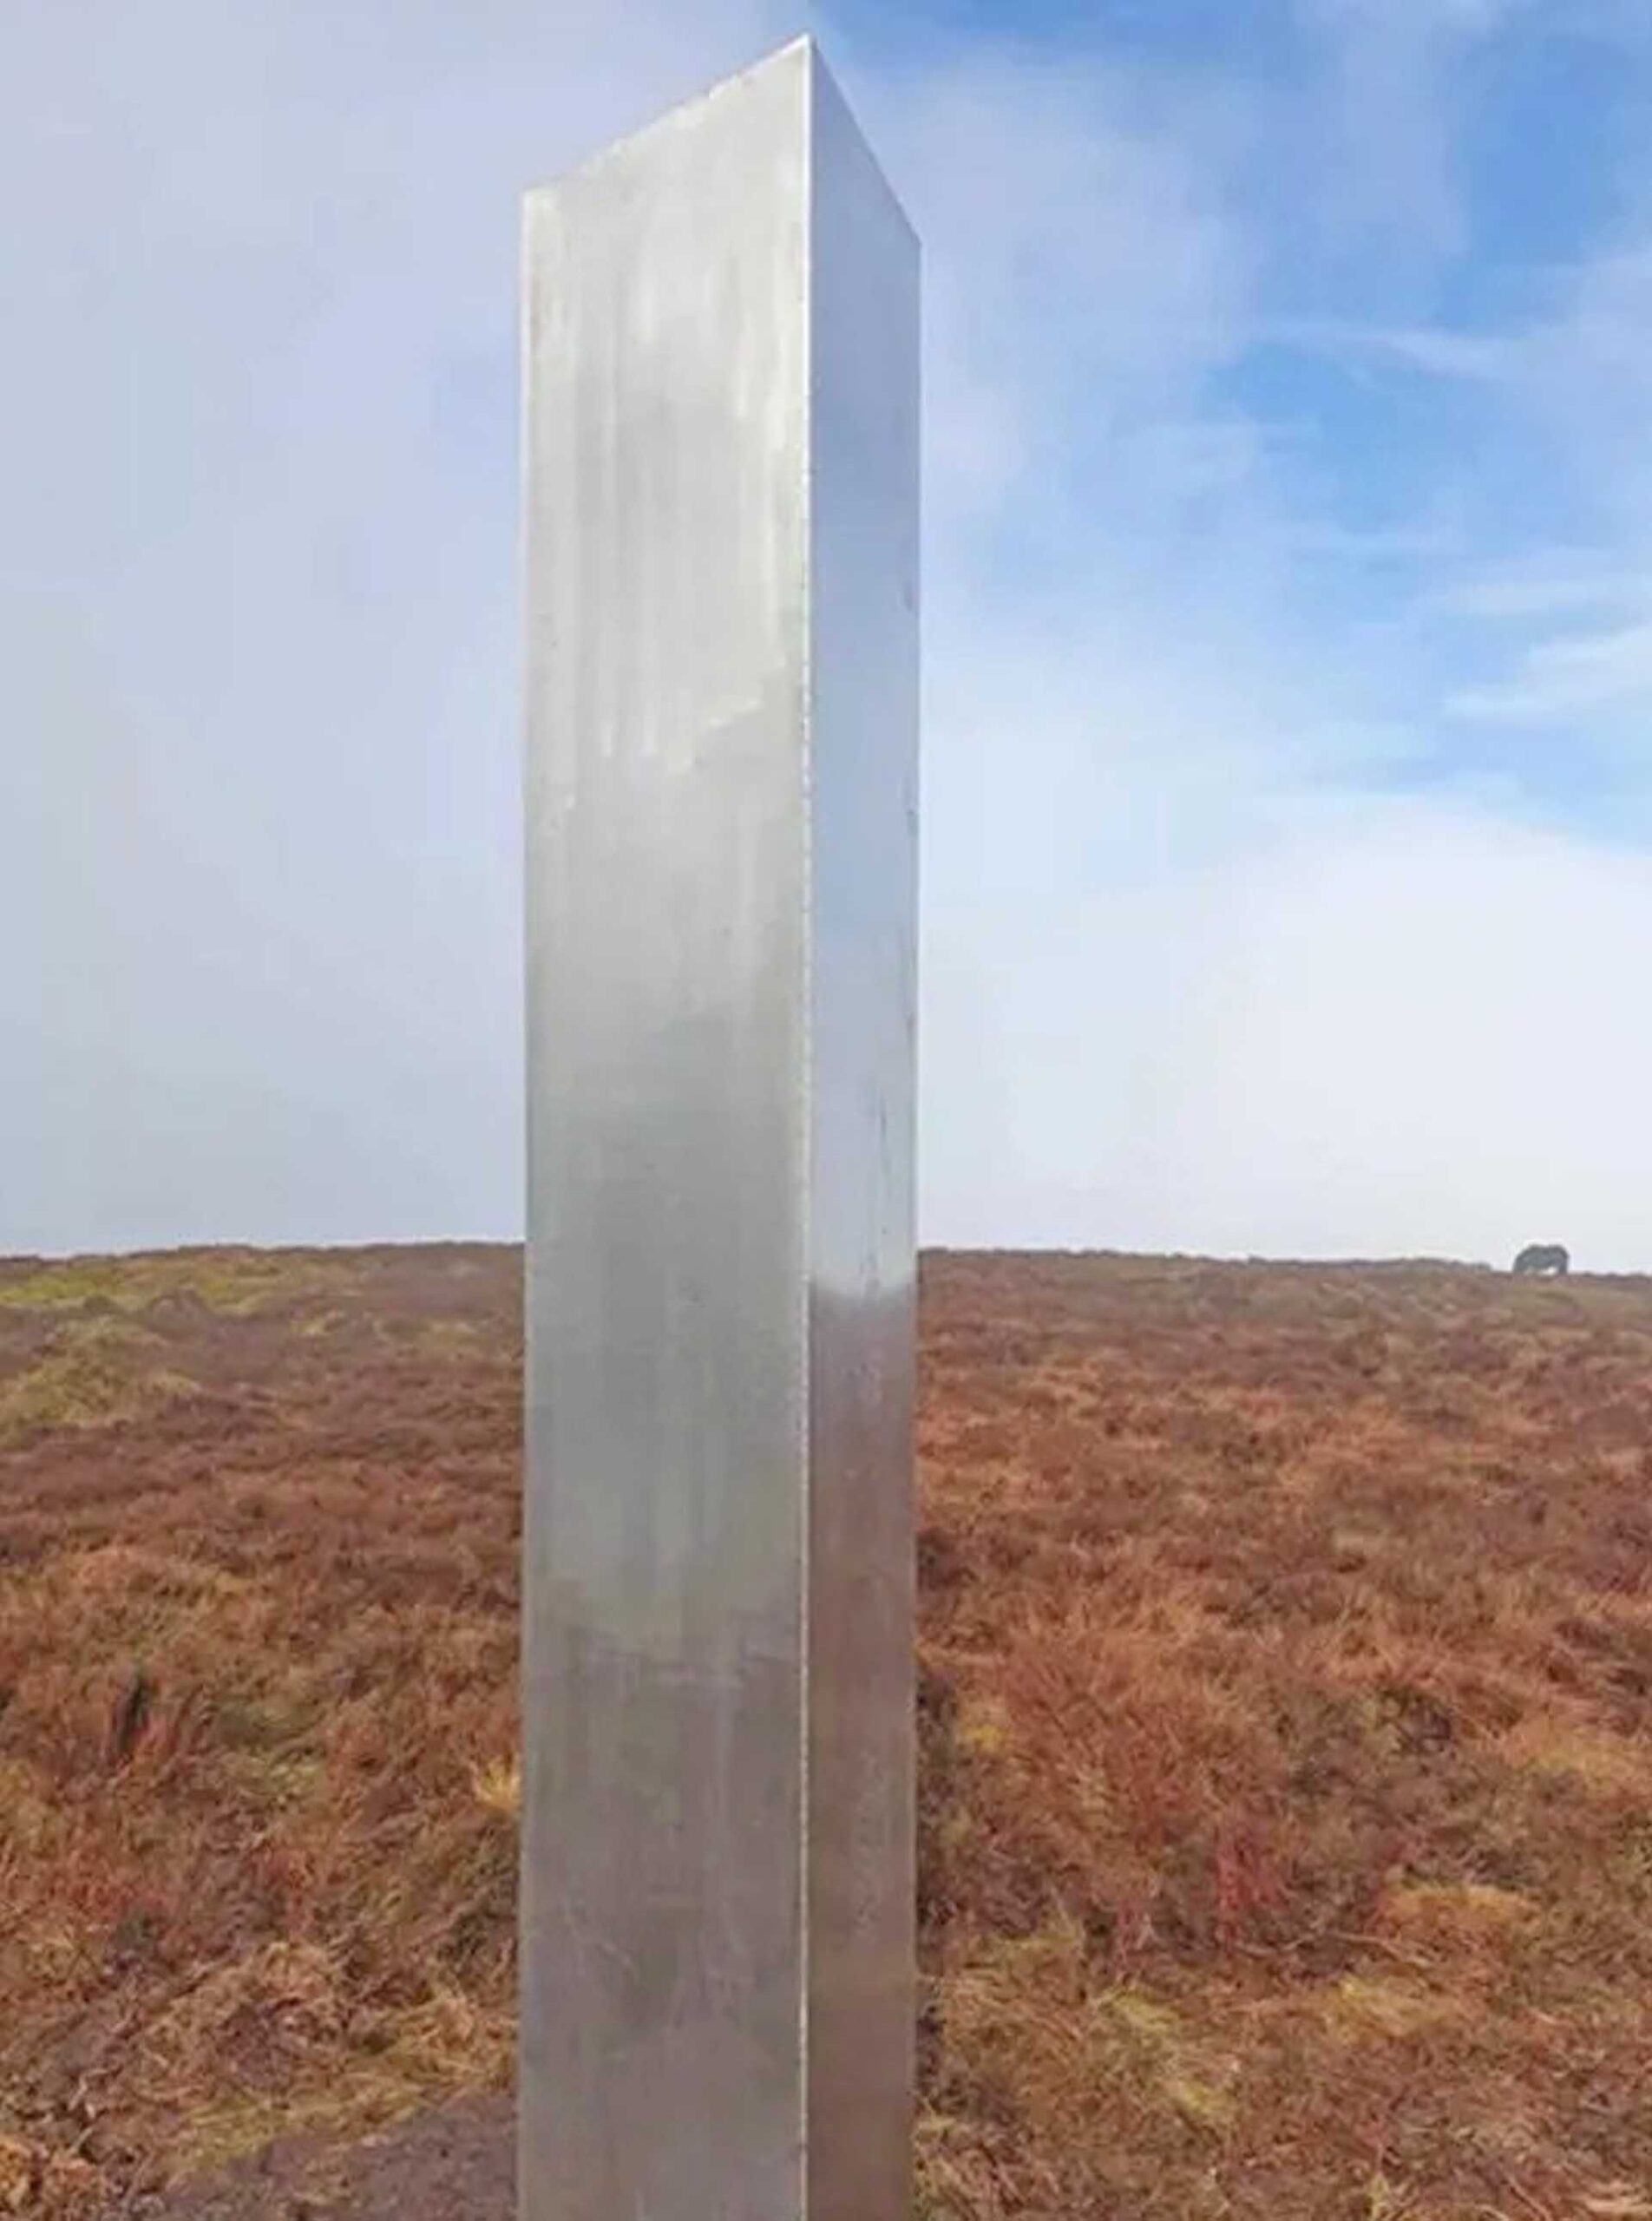 เสาปริศนาสูง 3 เมตร โผล่ในเวลส์-คล้าย “โมโนลิธ” ที่เป็นกระแสทั่วโลก 4 ปีก่อน